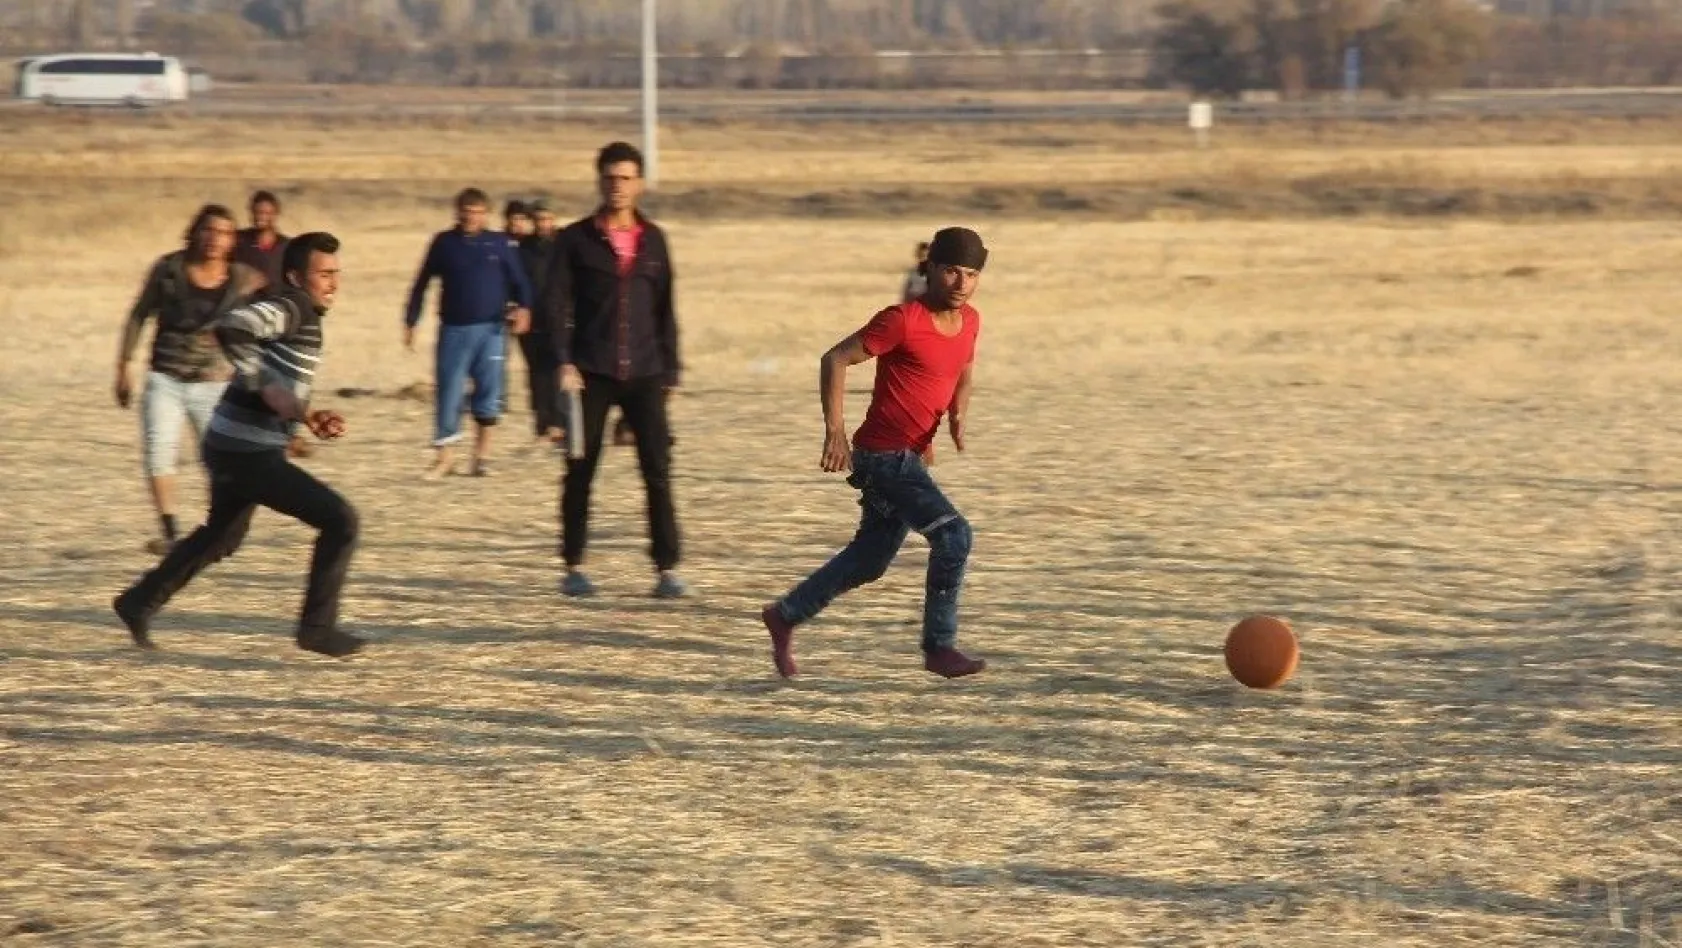 Suriyeli tarım işçilerinin futbol keyfi
